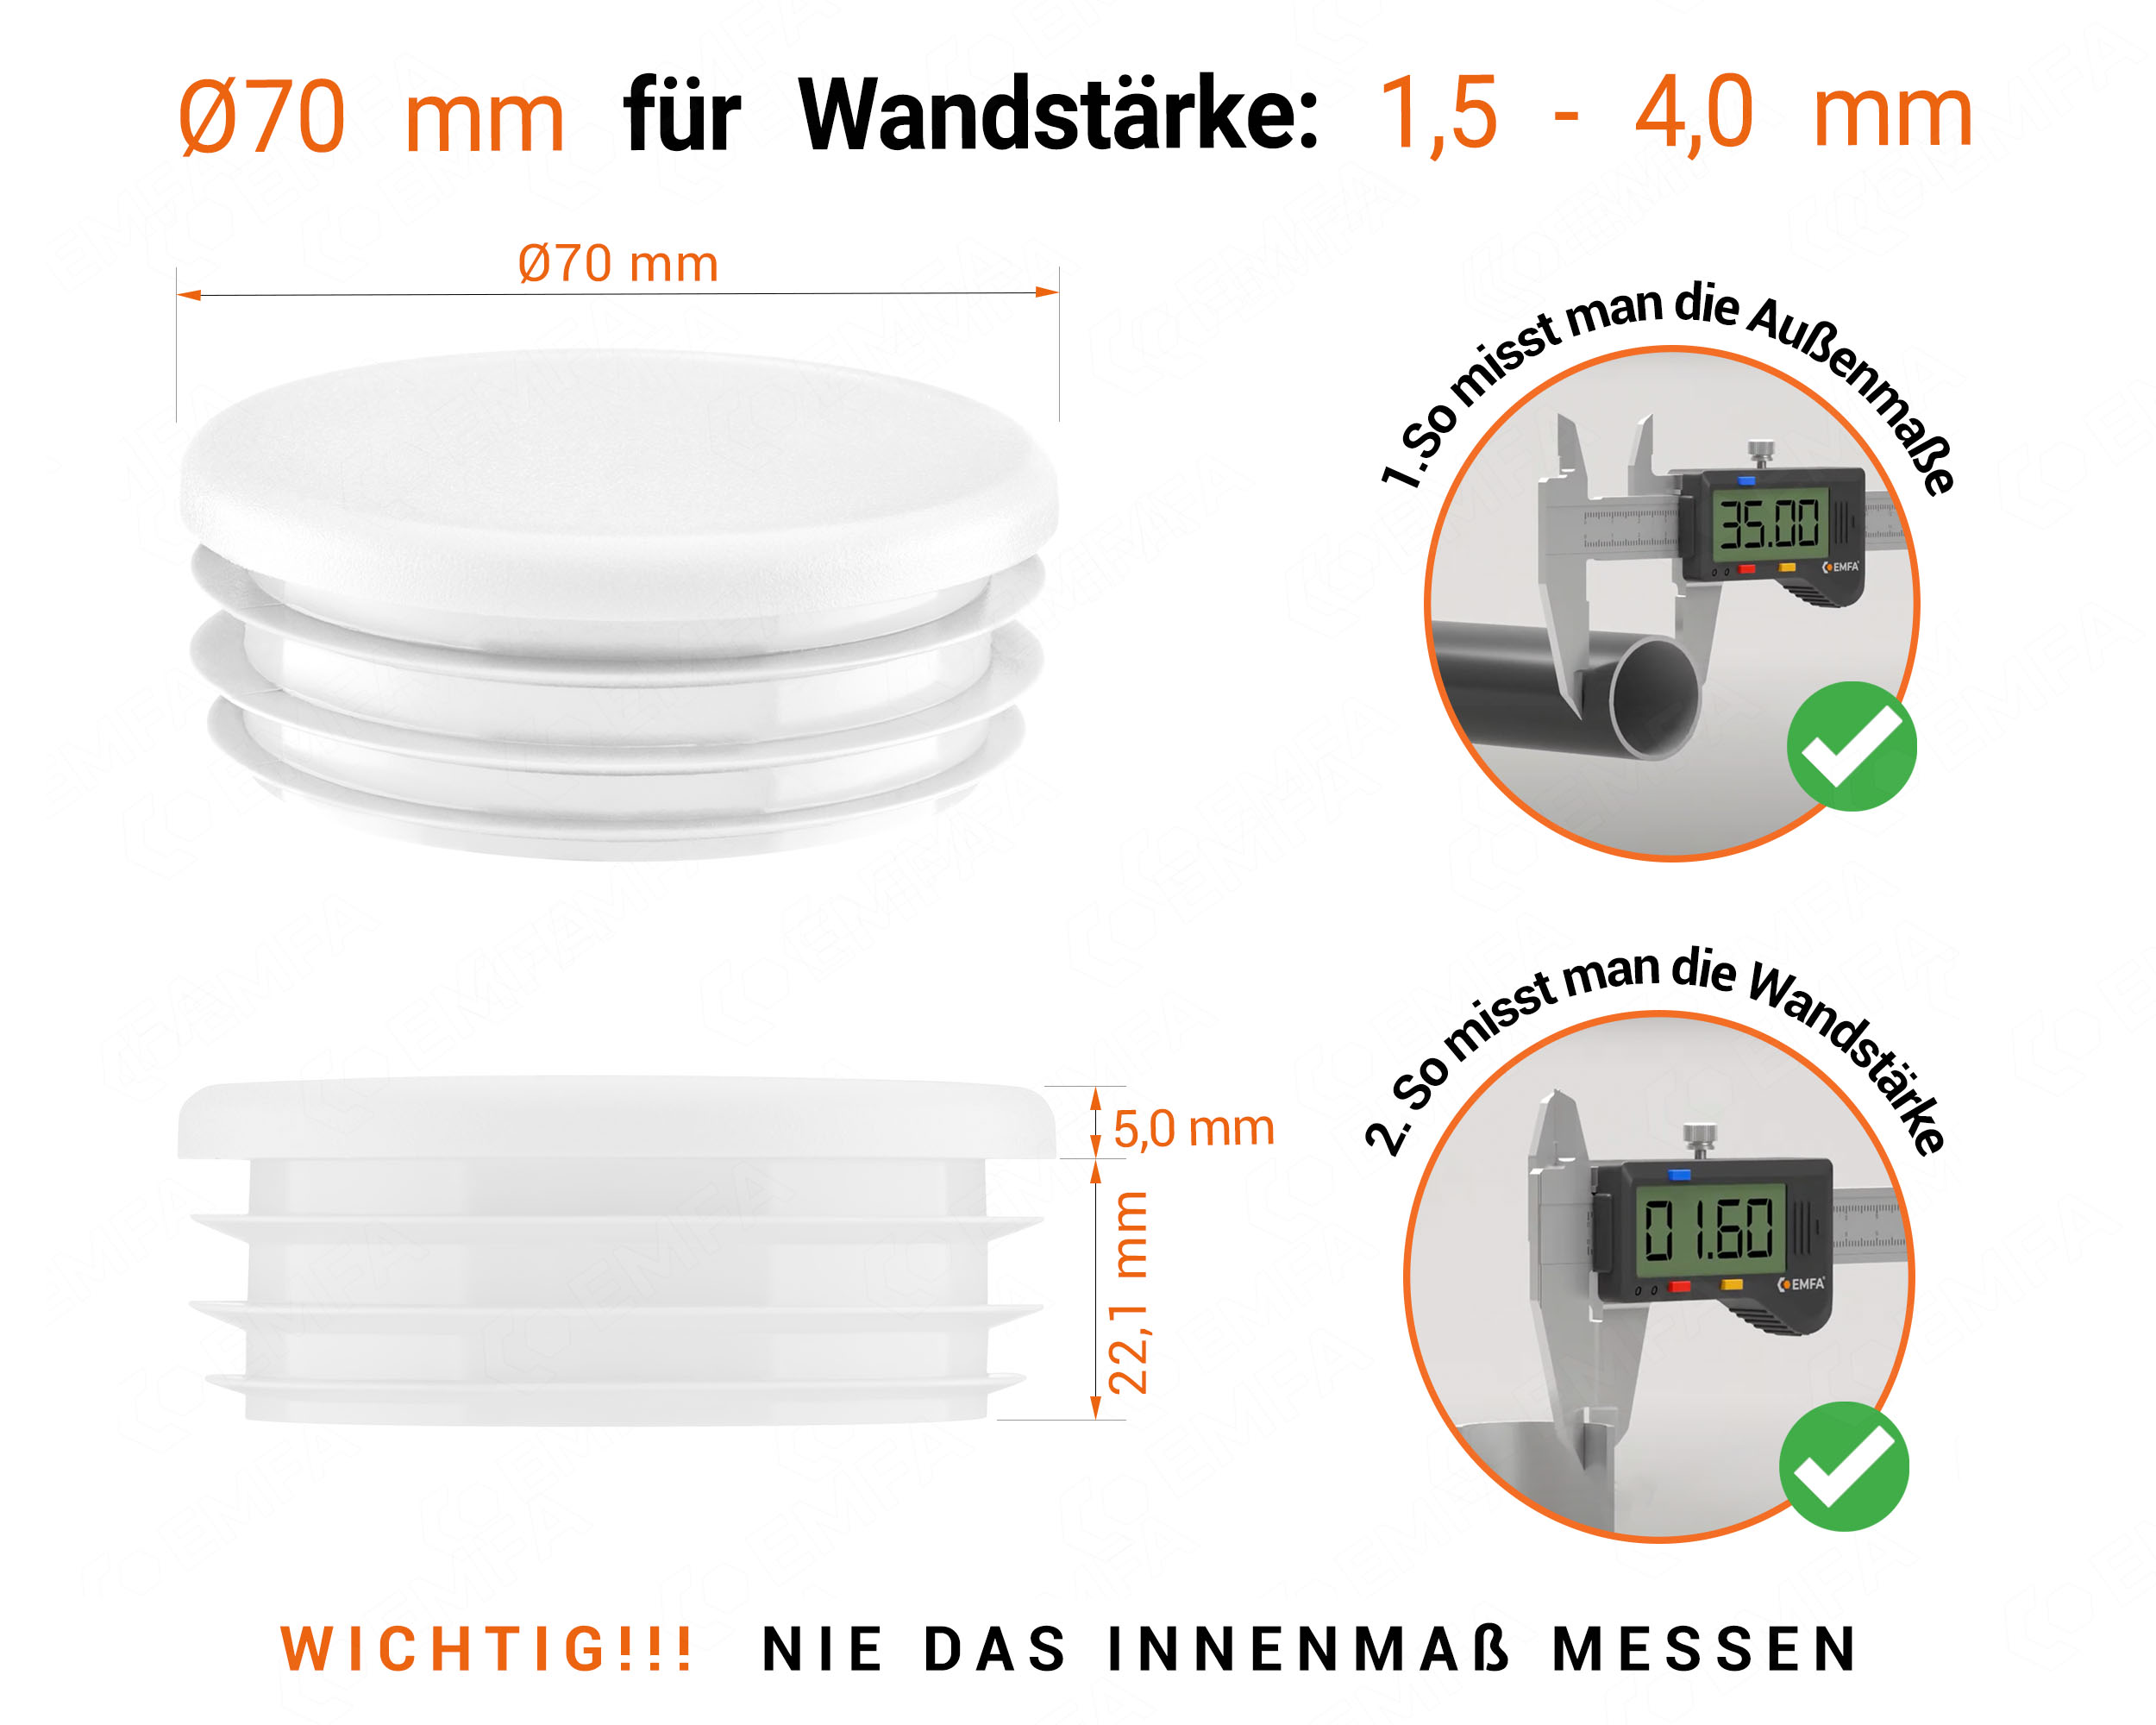 Weiße Endkappe für Rundrohre in der Größe 70 mm mit technischen Abmessungen und Anleitung für korrekte Messung